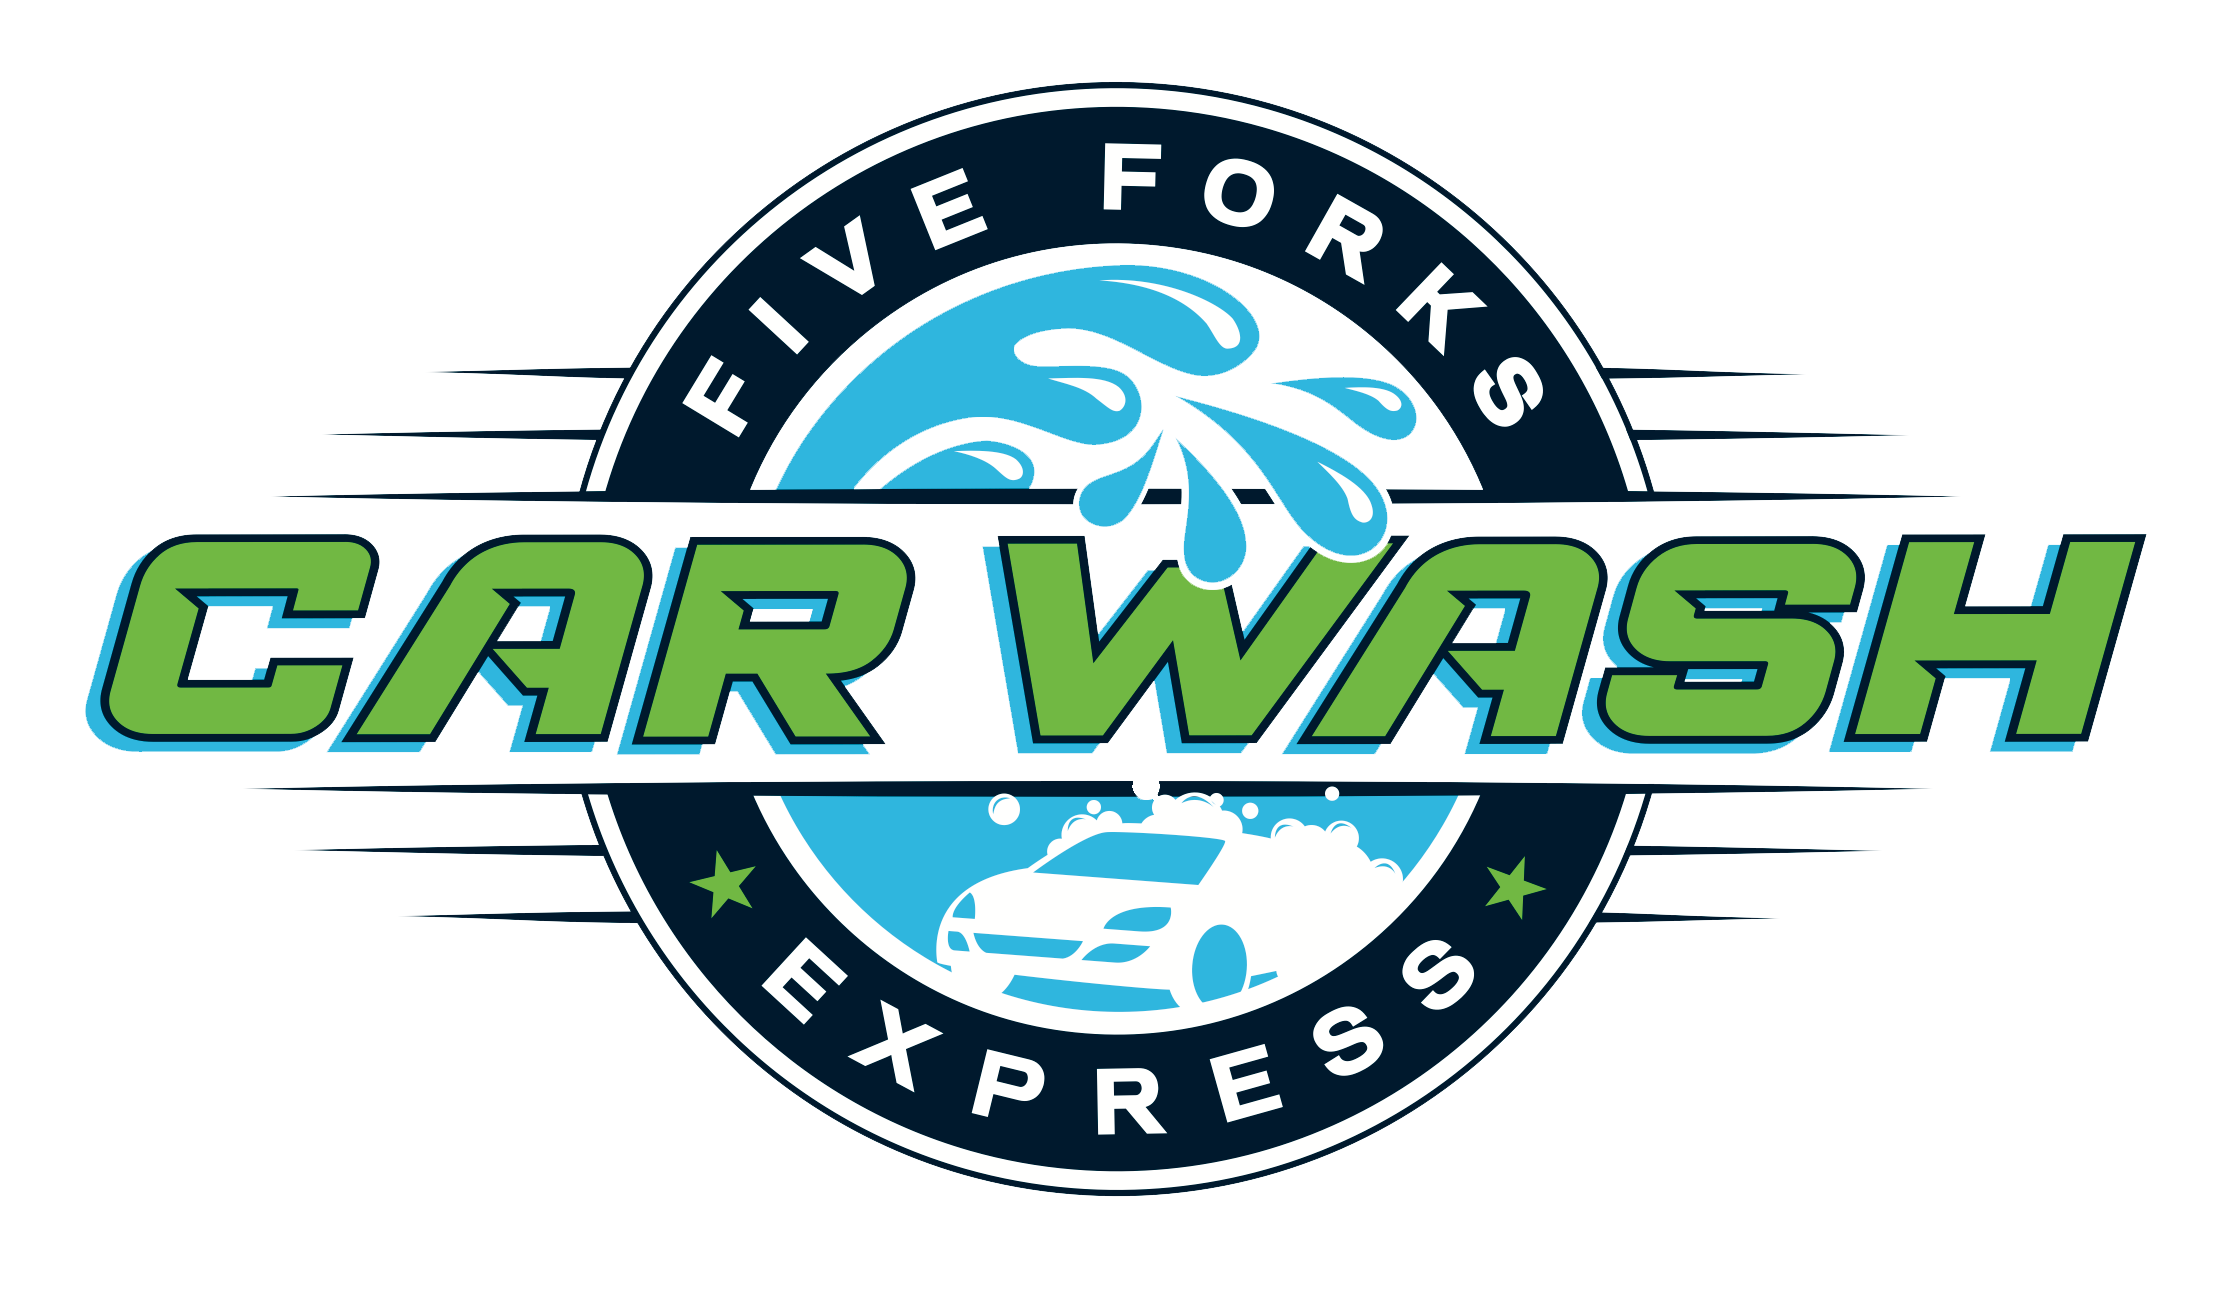 Five Forks Express